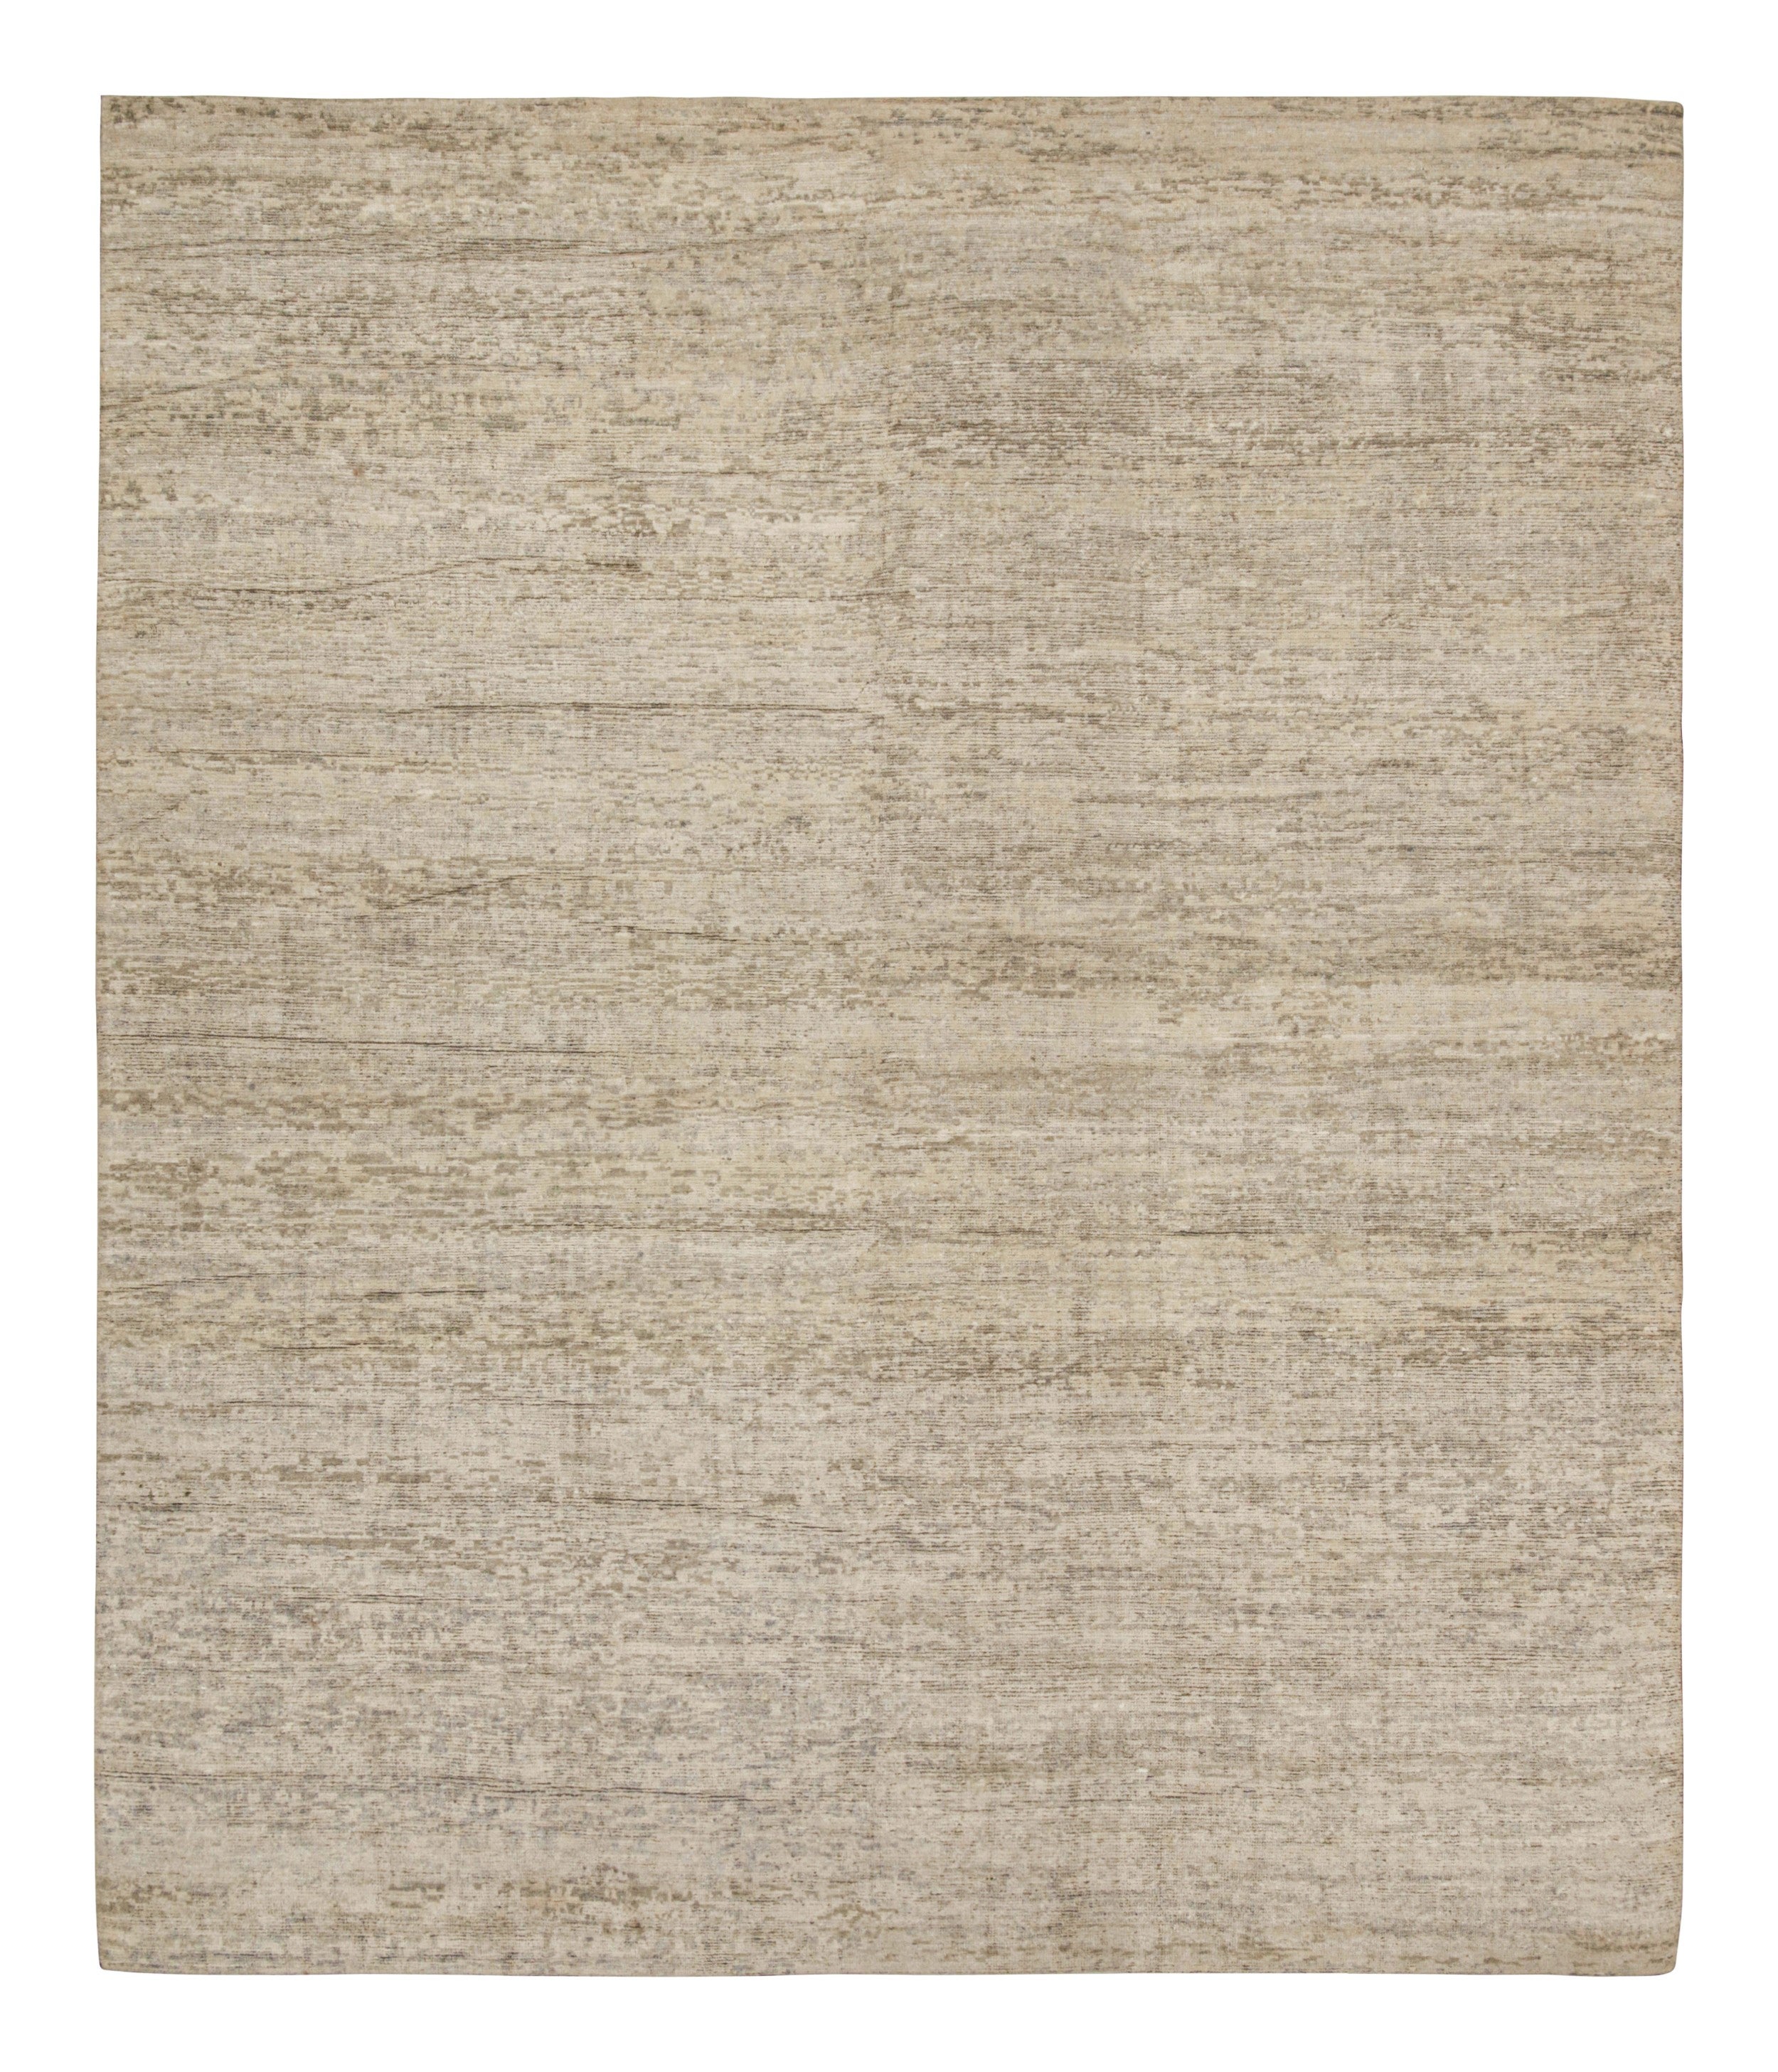 Dieser zeitgenössische Teppich im Format 15x18 ist ein Neuzugang in der Texture of Color Collection'S von Rug & Kilim. Das Design des aus Wolle und Seide handgeknüpften Teppichs ist eine kühne Interpretation von einfarbigen Teppichen mit einem